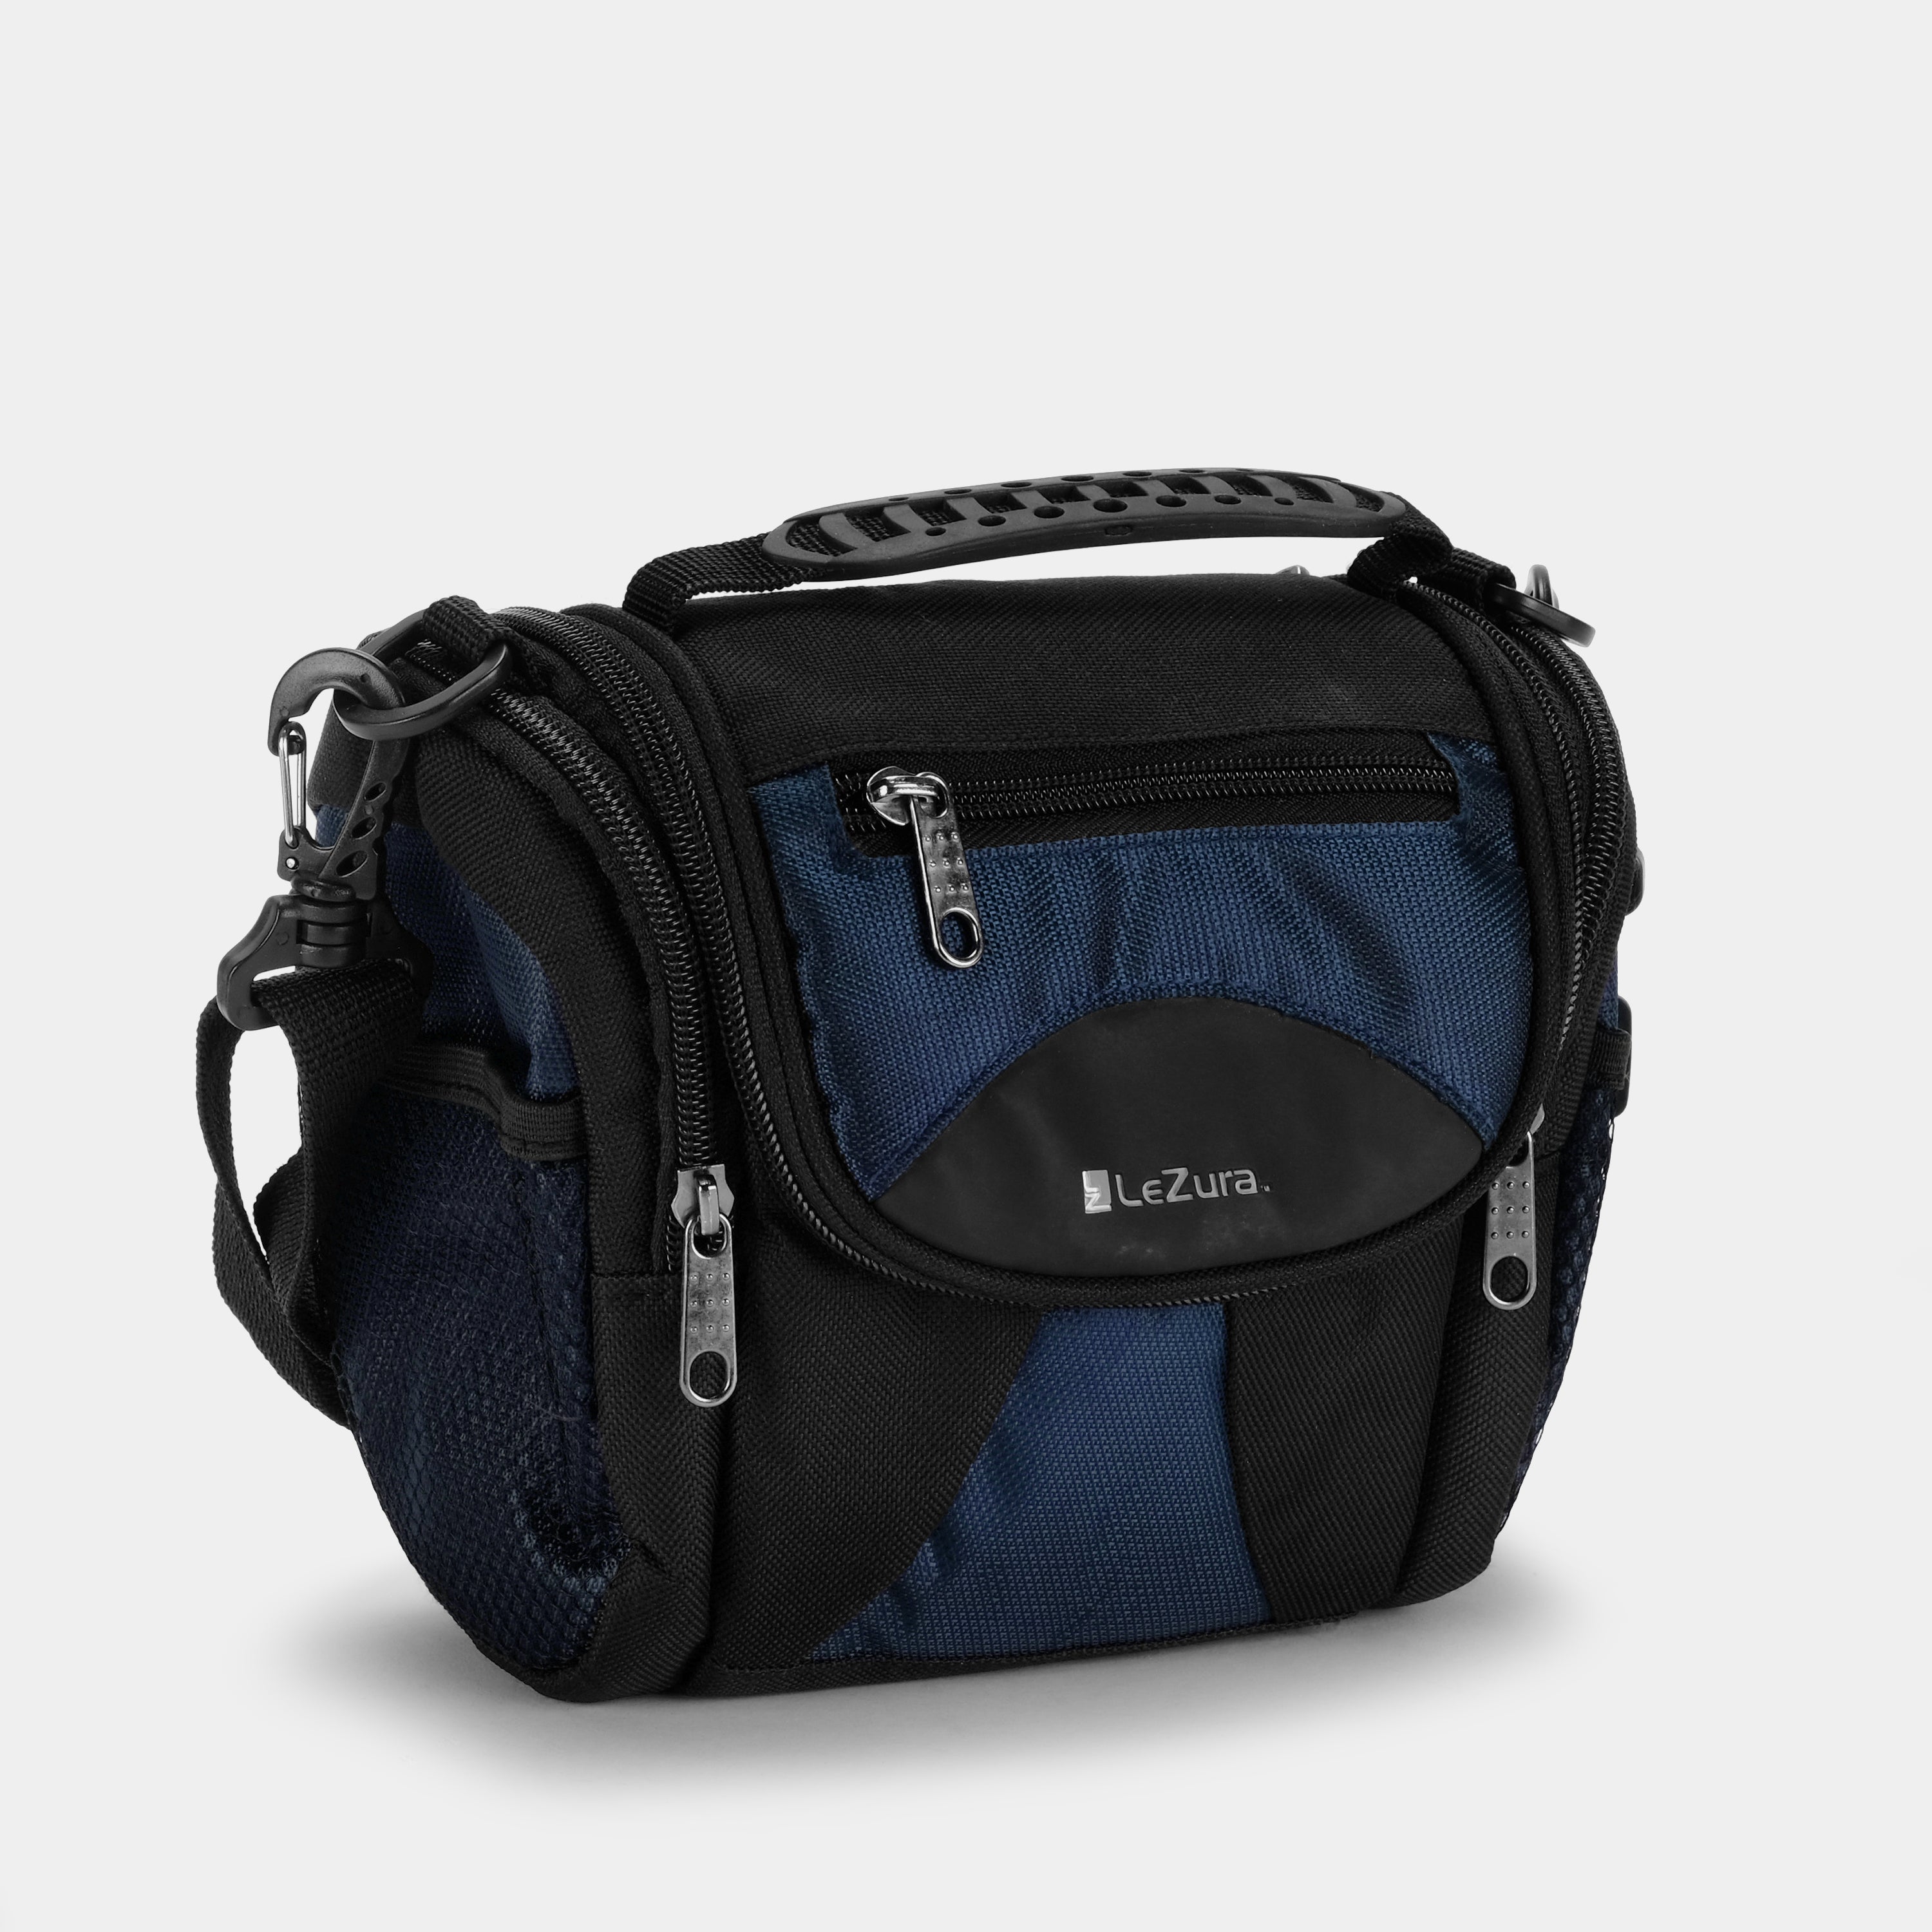 LeZura Black and Blue Camera Bag